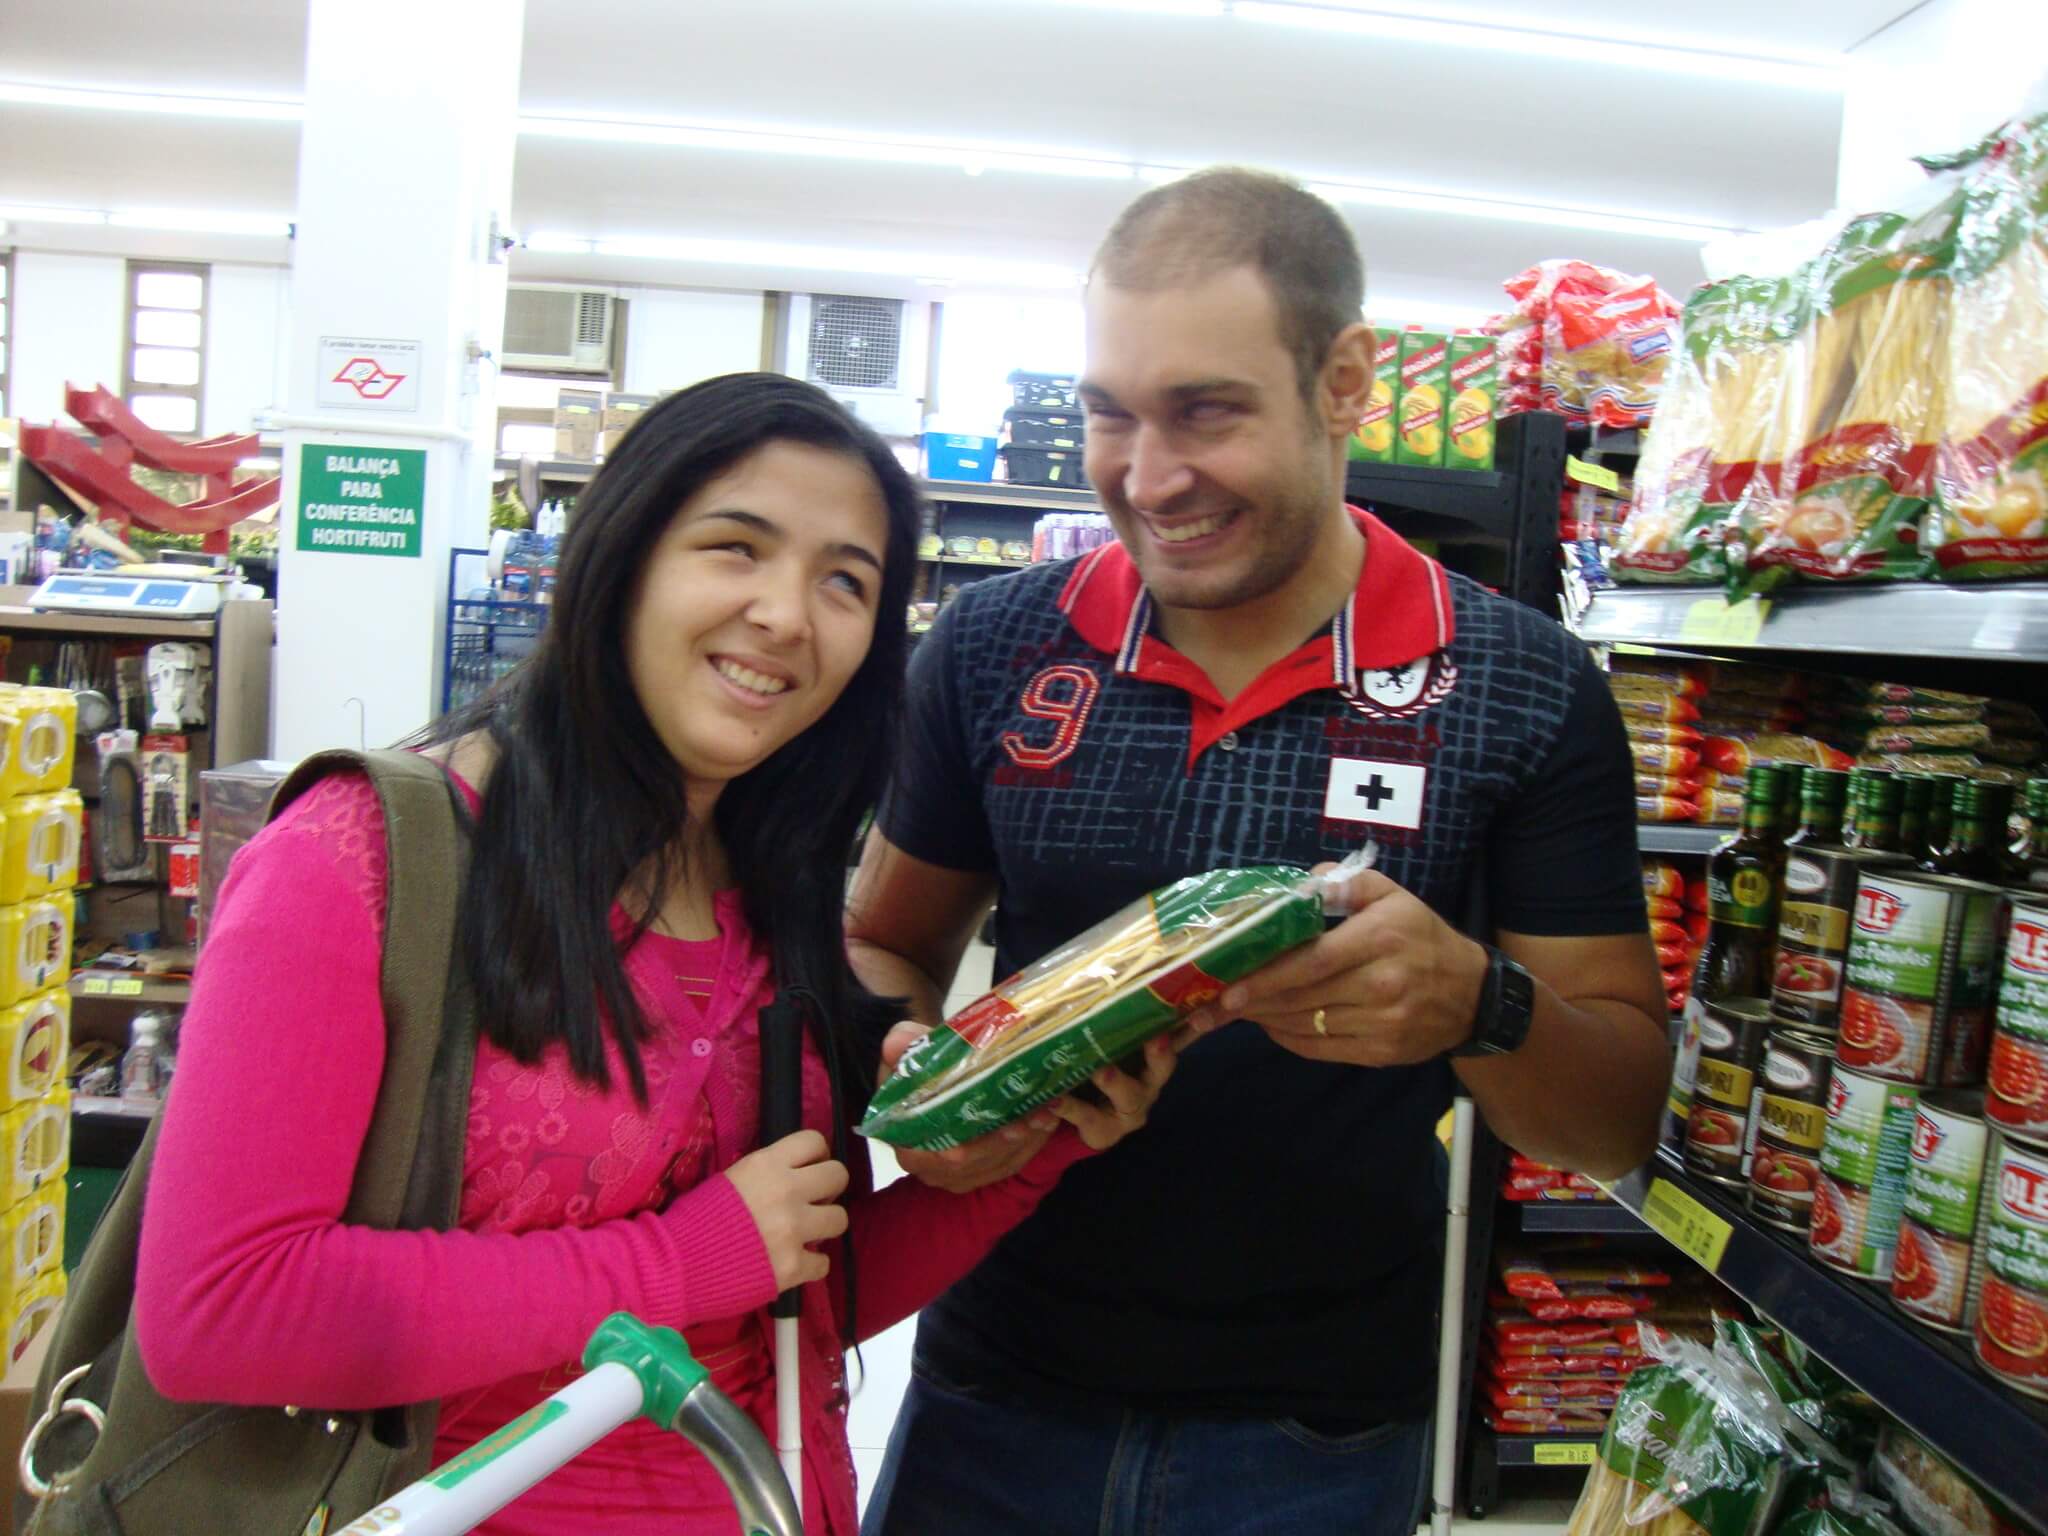 Um casal de adultos deficientes visuais fazendo compras no supermercado.